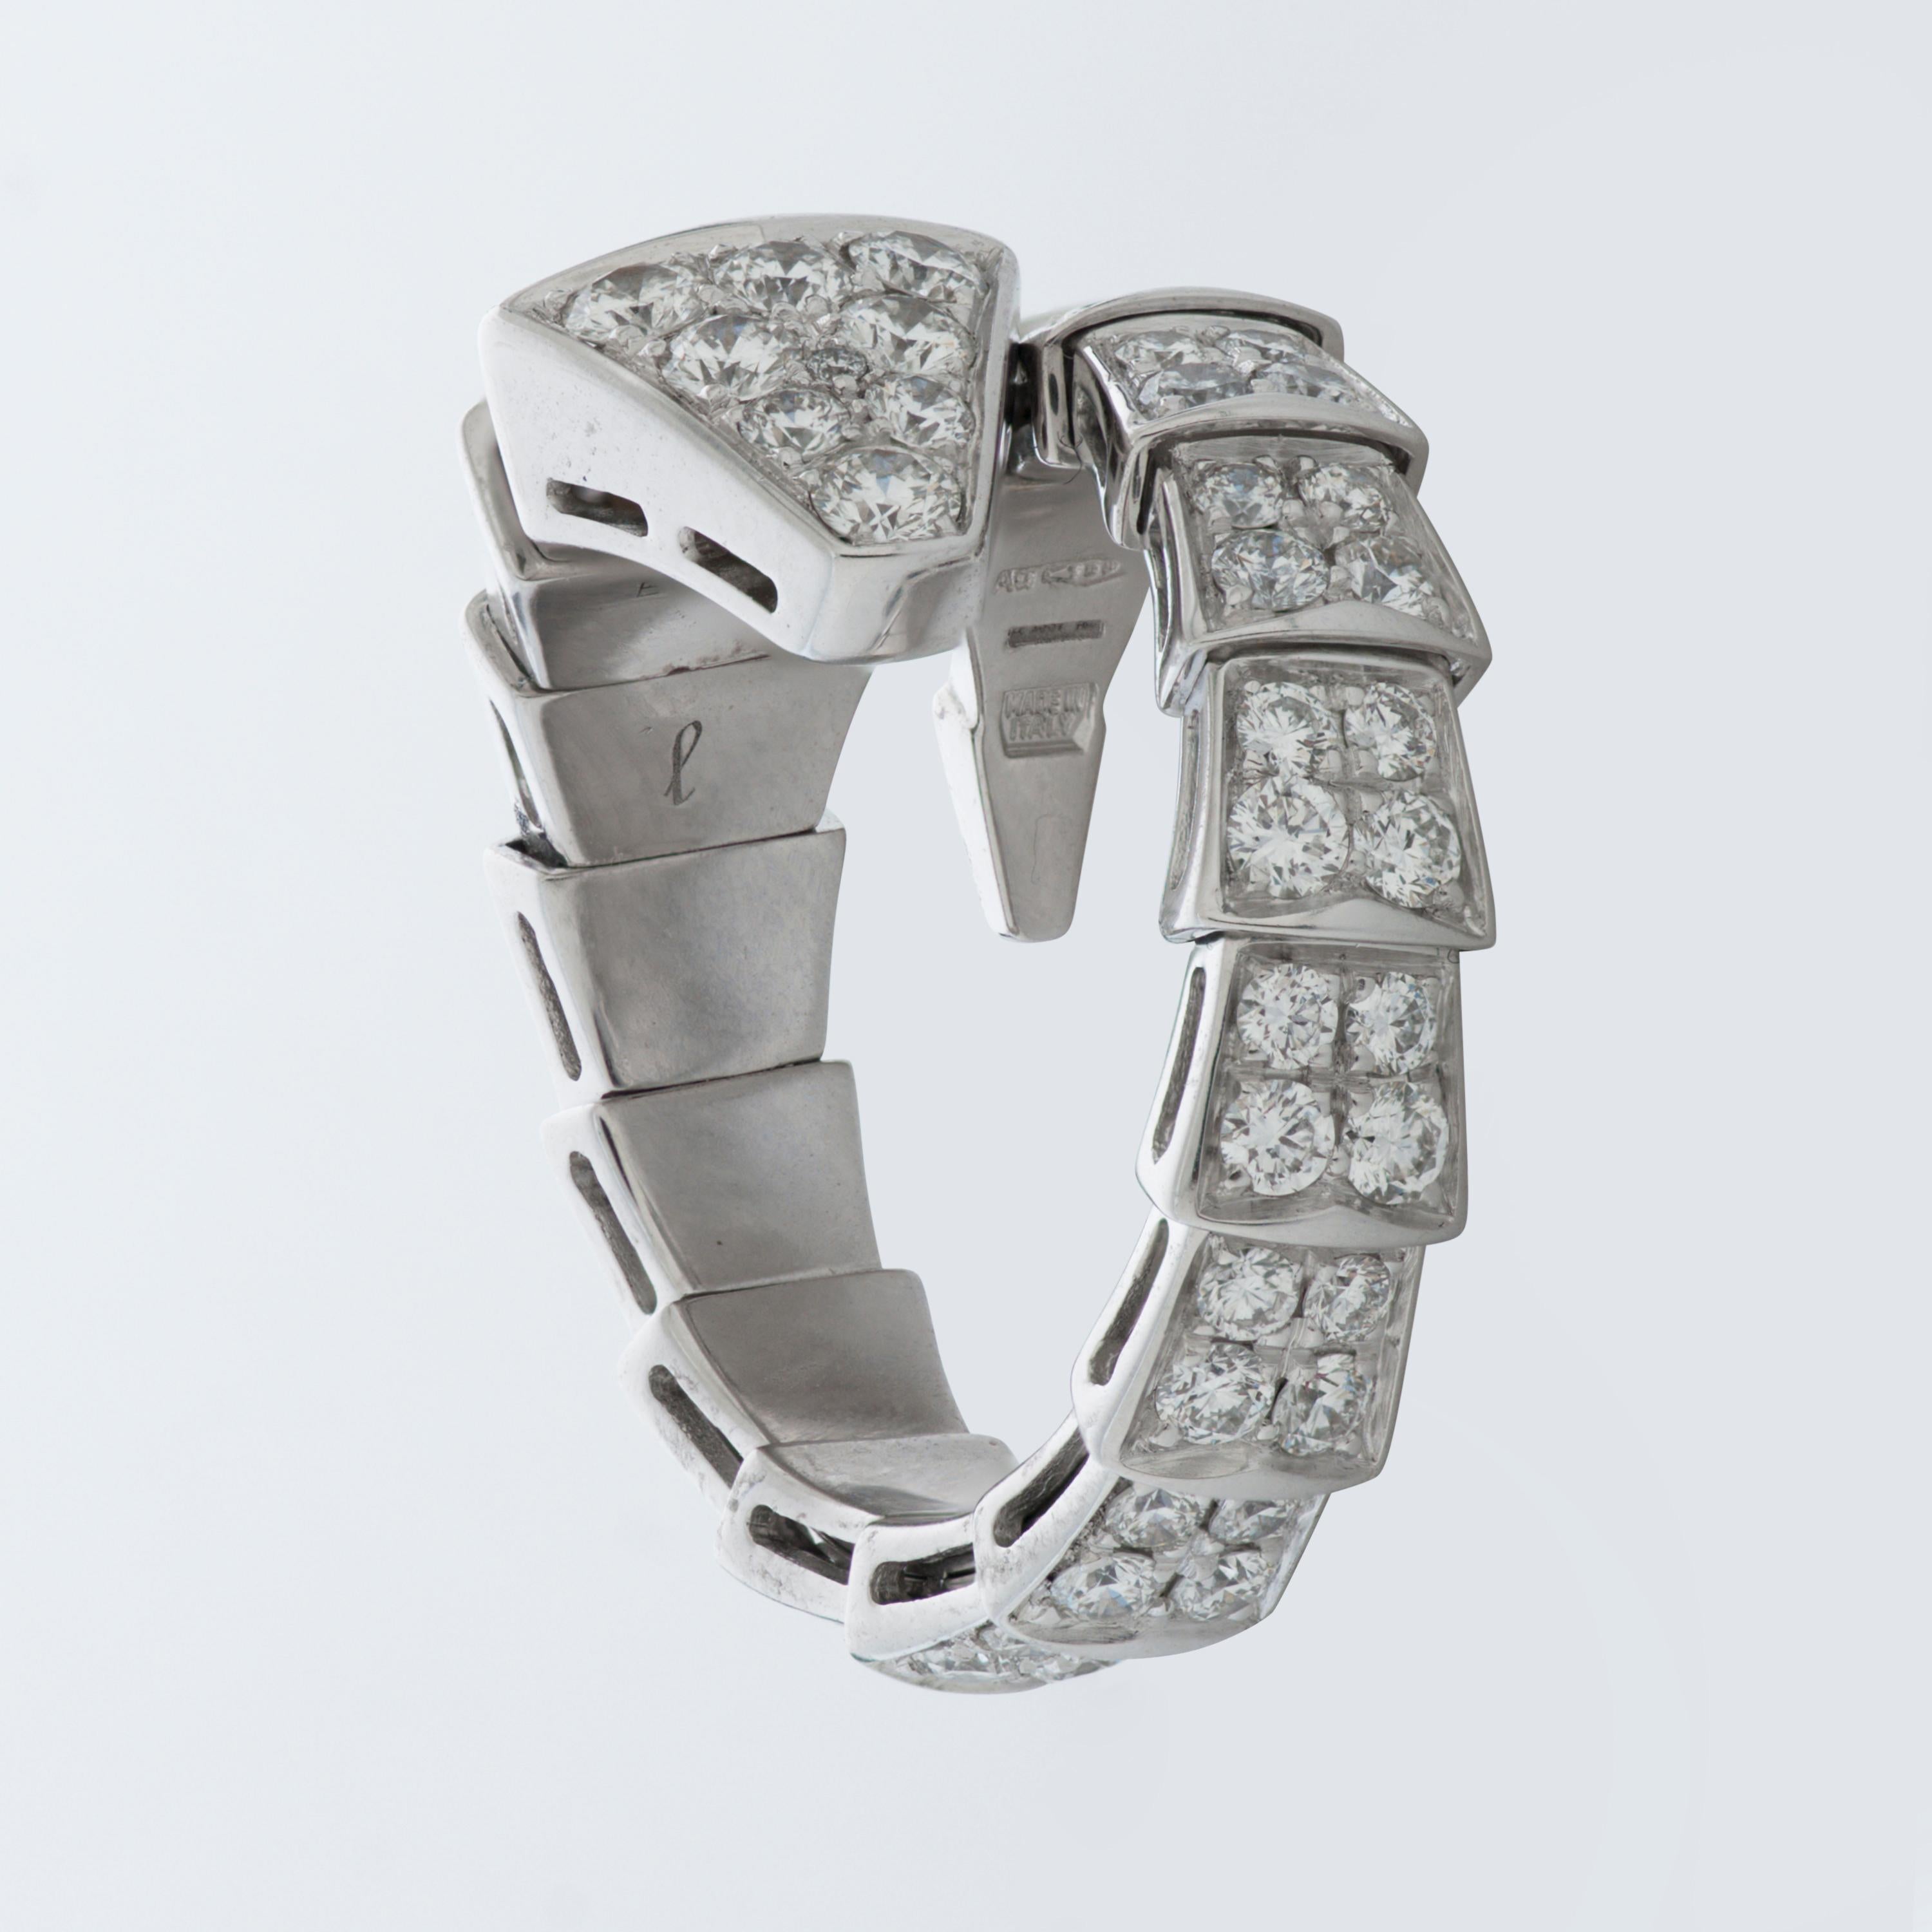 Este anillo Bulgari de la colección Serpenti Viper tiene aproximadamente 1,74 quilates de diamantes redondos de talla brillante engastados en oro blanco de 18 quilates. 

Talla grande, flexible.  Se adapta a las tallas 7-7,75 US (54-56 EU).
Numerado